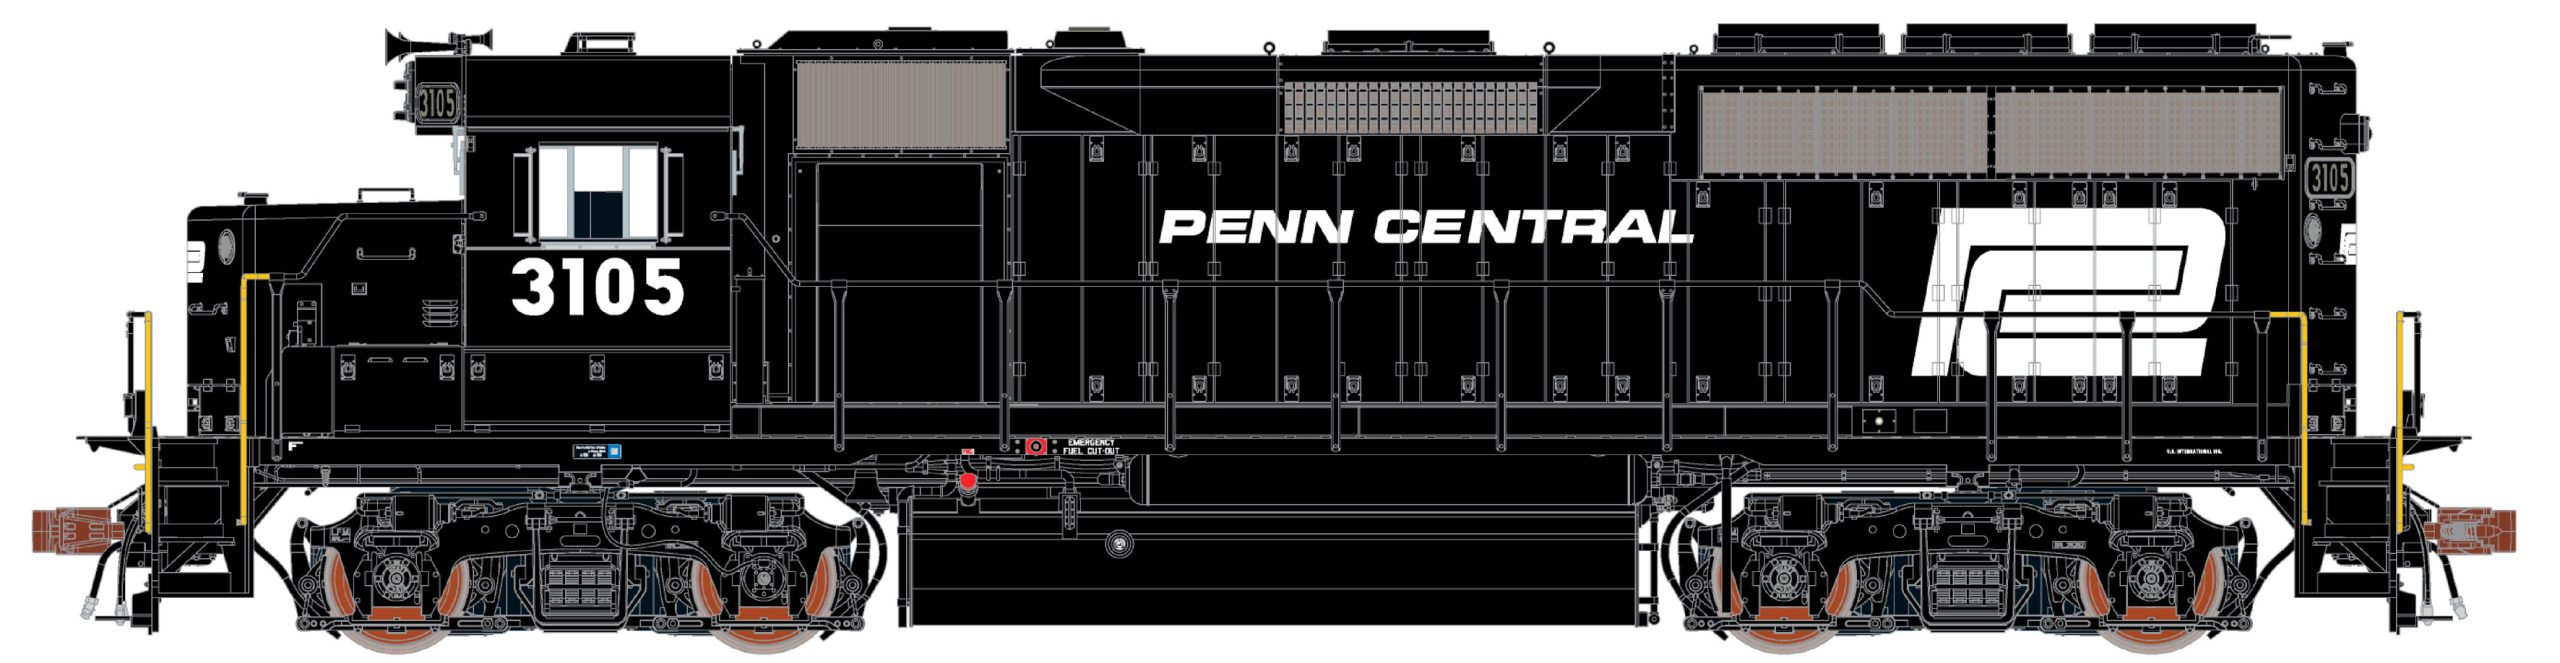 Penn Central